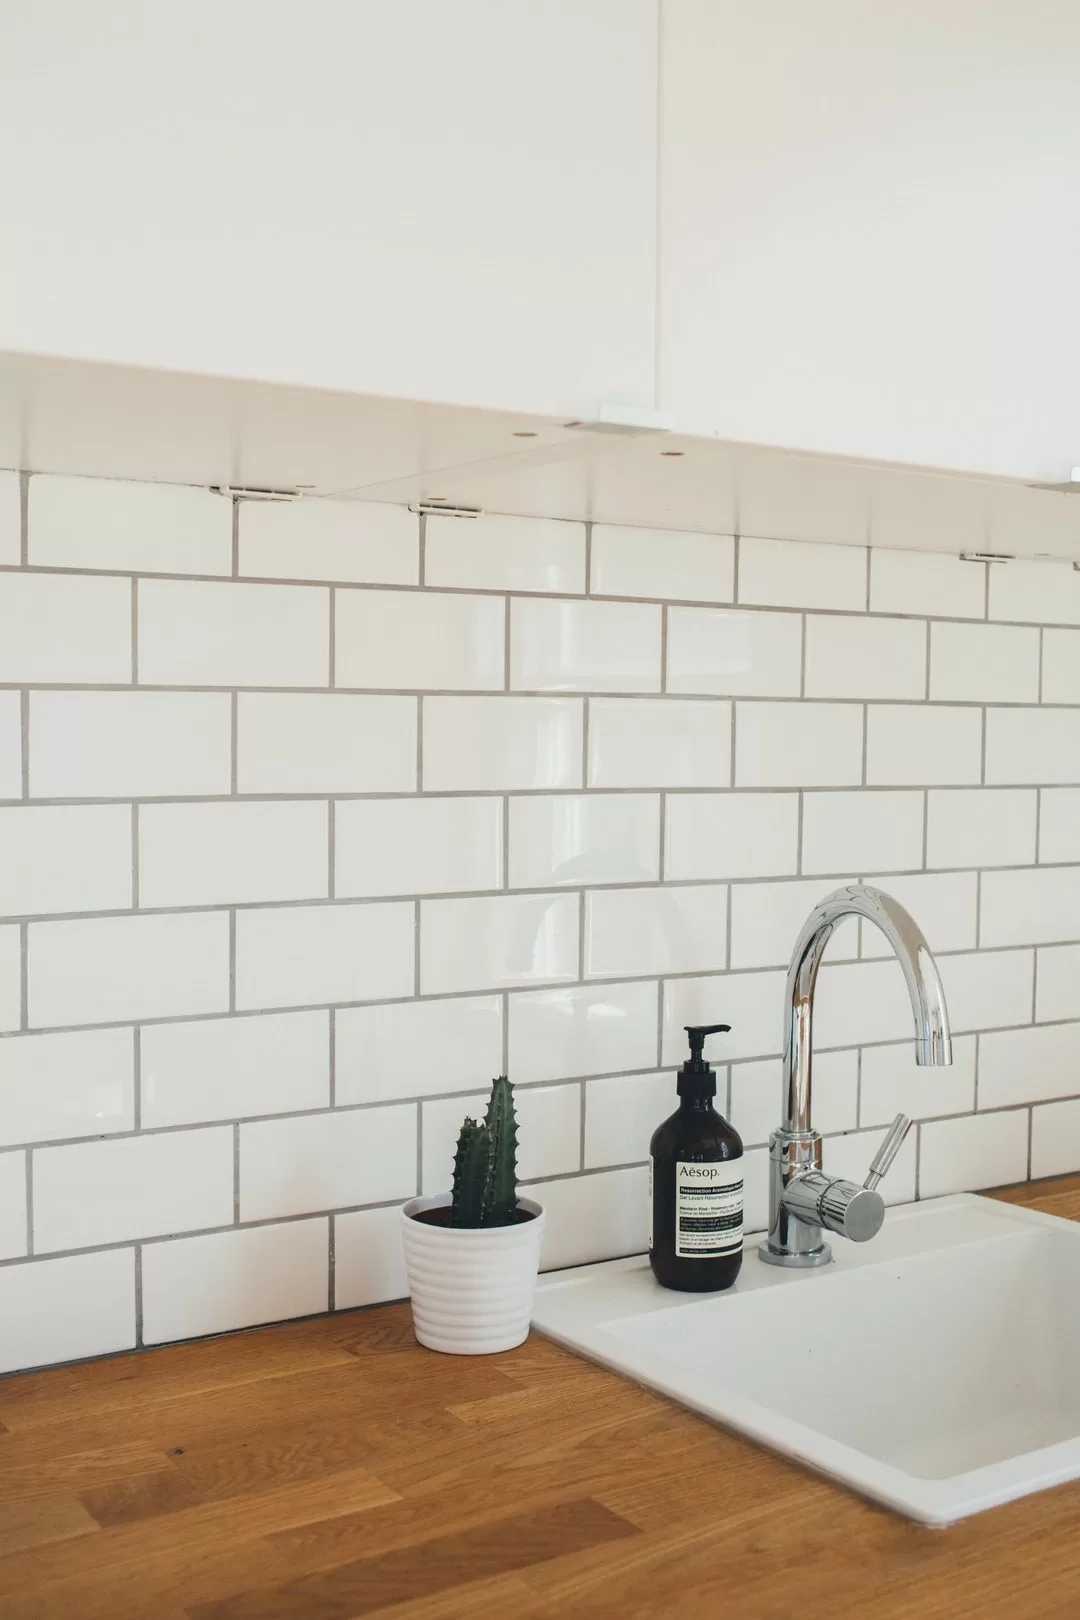 Image - 6 Benefits of Adding a Kitchen Tile Backsplash